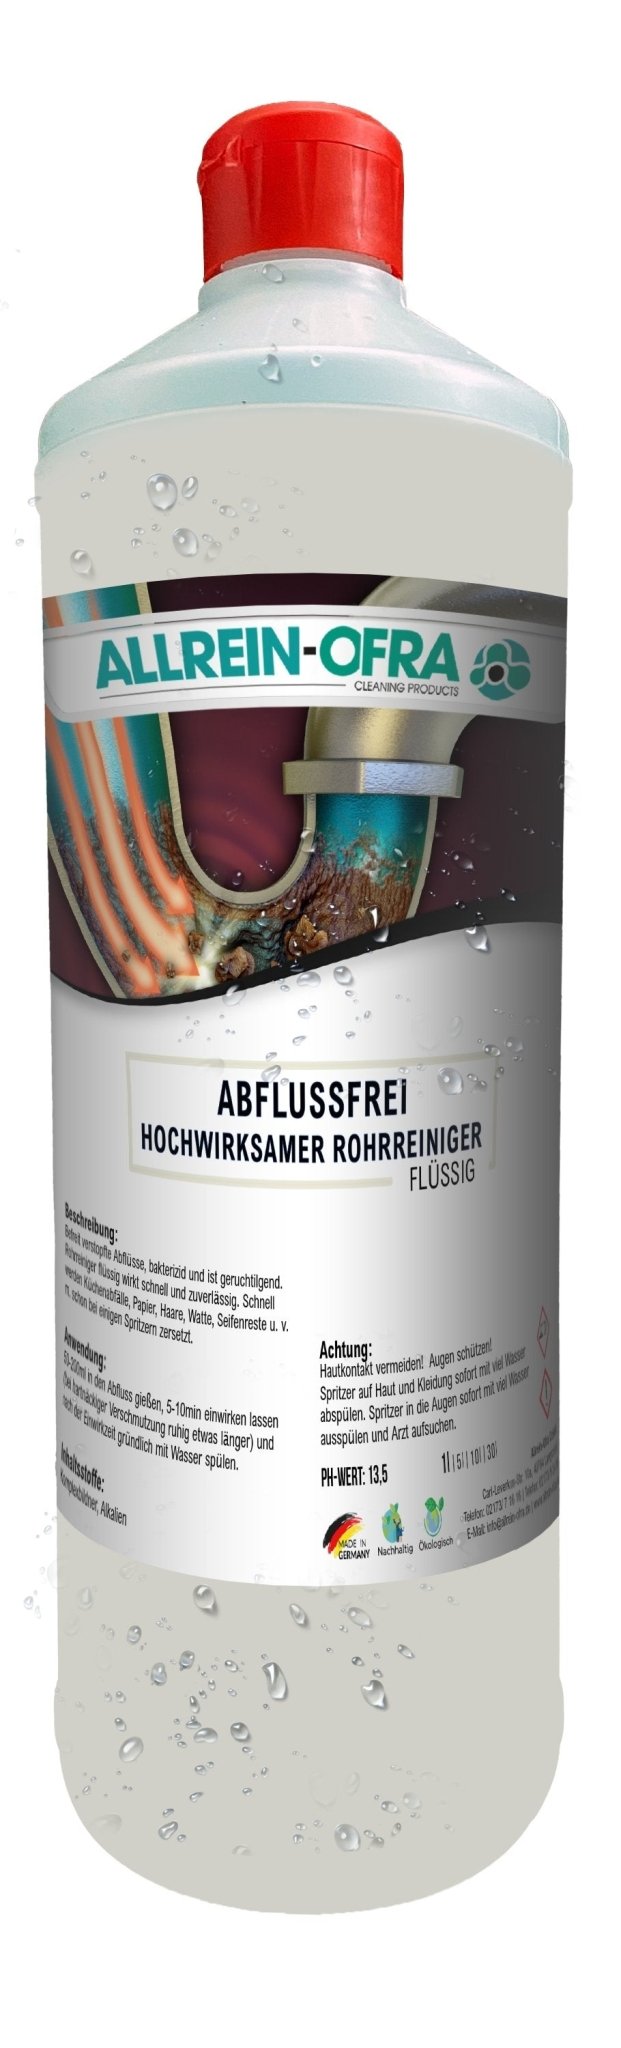 Abflussfrei | hochwirksamer Rohrreiniger | 1 Liter Flasche | Allrein-Ofra - fivestartoolshop.com